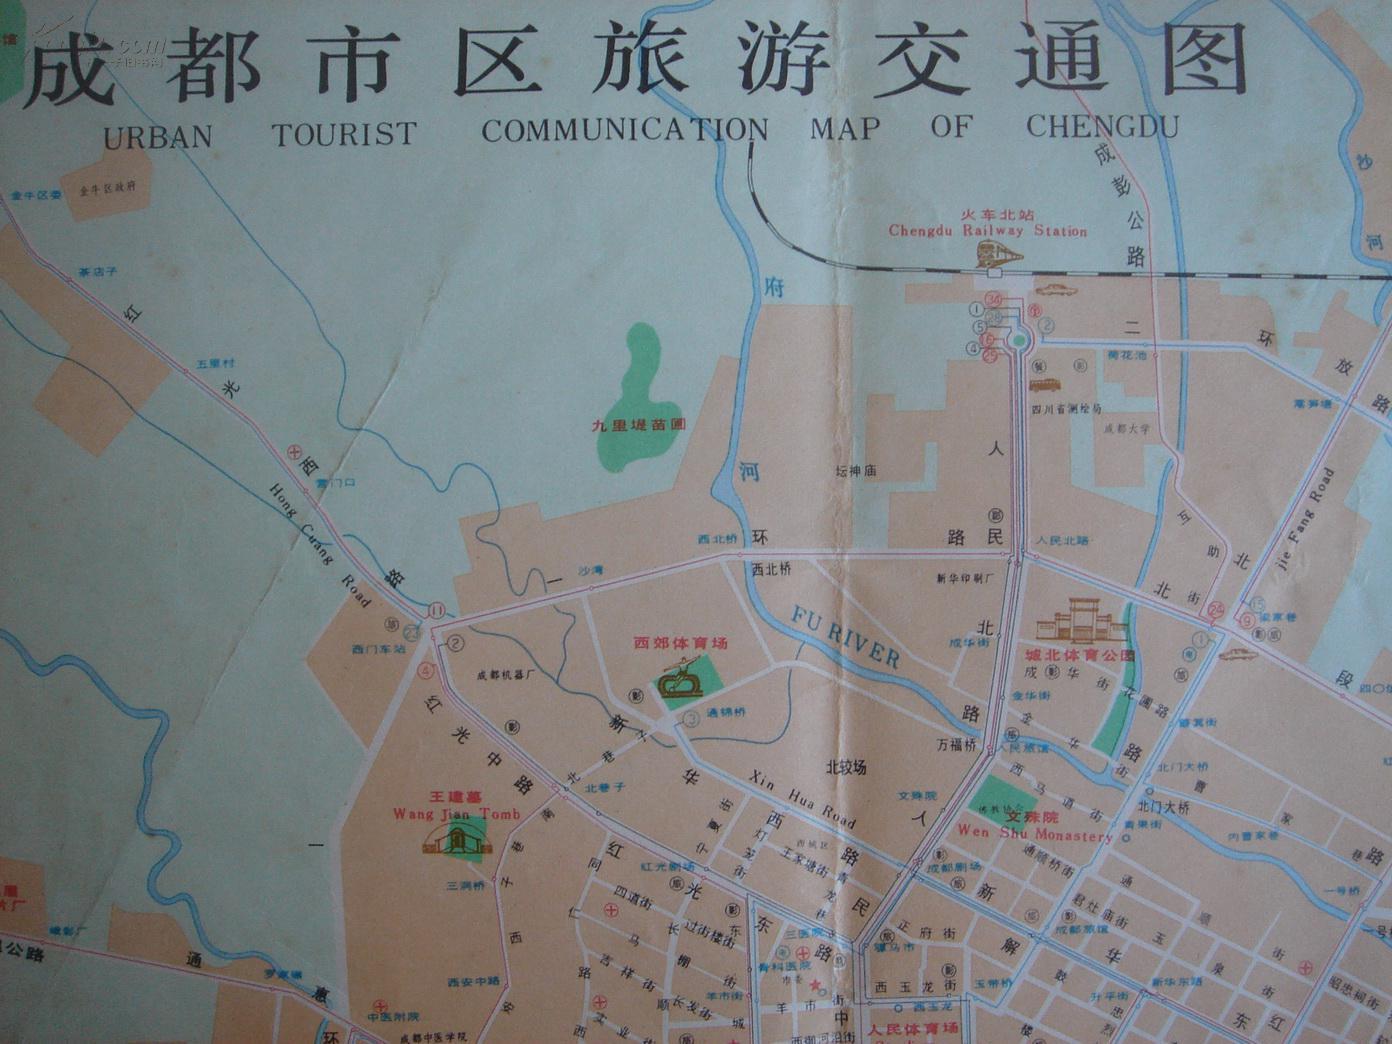 【旧地图】成都市区旅游交通图 4开 1982年3月1版1印图片